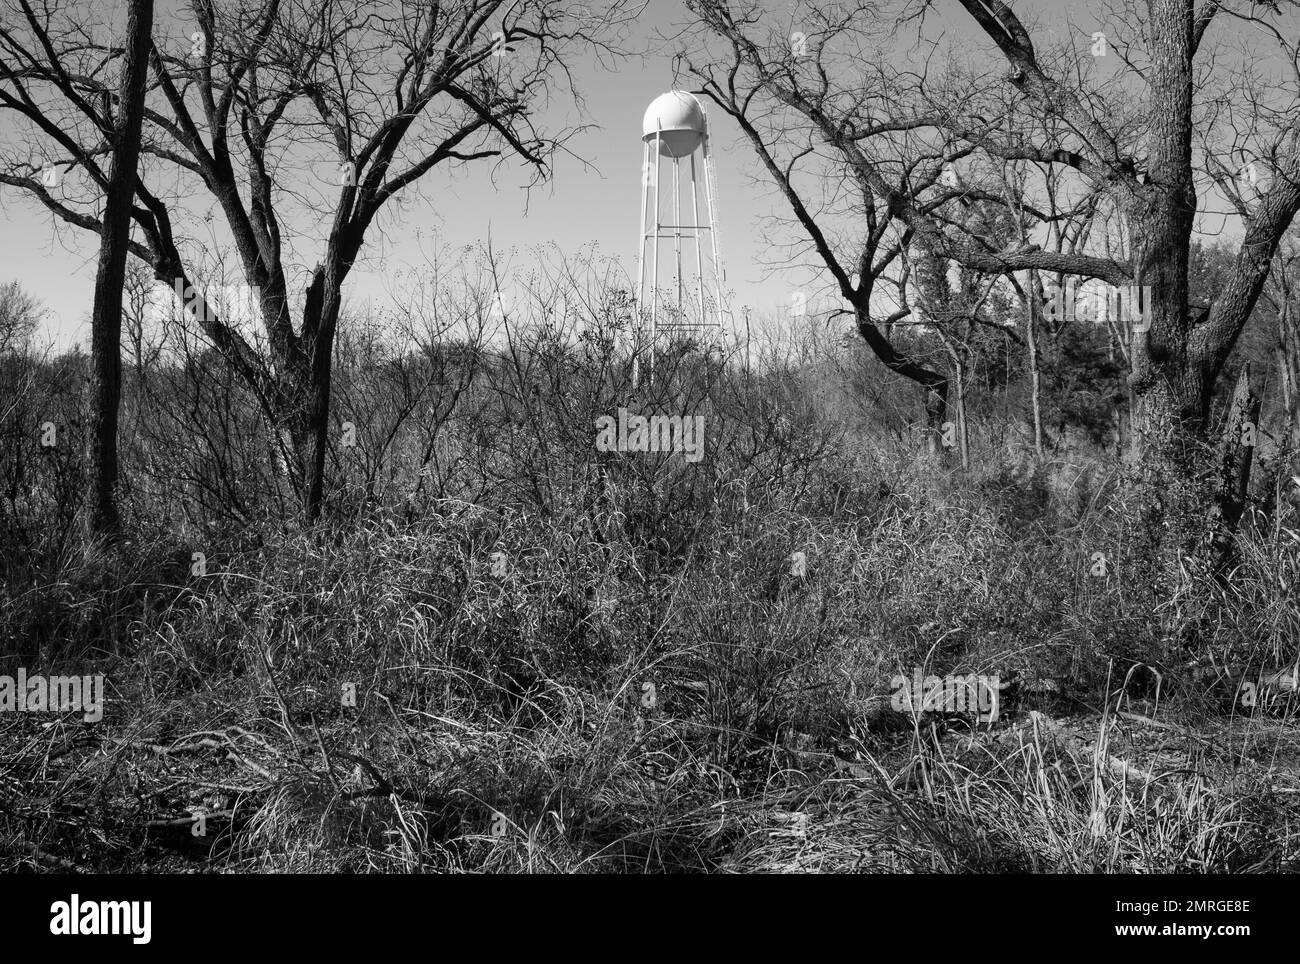 Photo en noir et blanc d'une tour de stockage d'eau dans un champ sec d'arbres frappés par la sécheresse. Parc national d'Abilene, Texas Banque D'Images